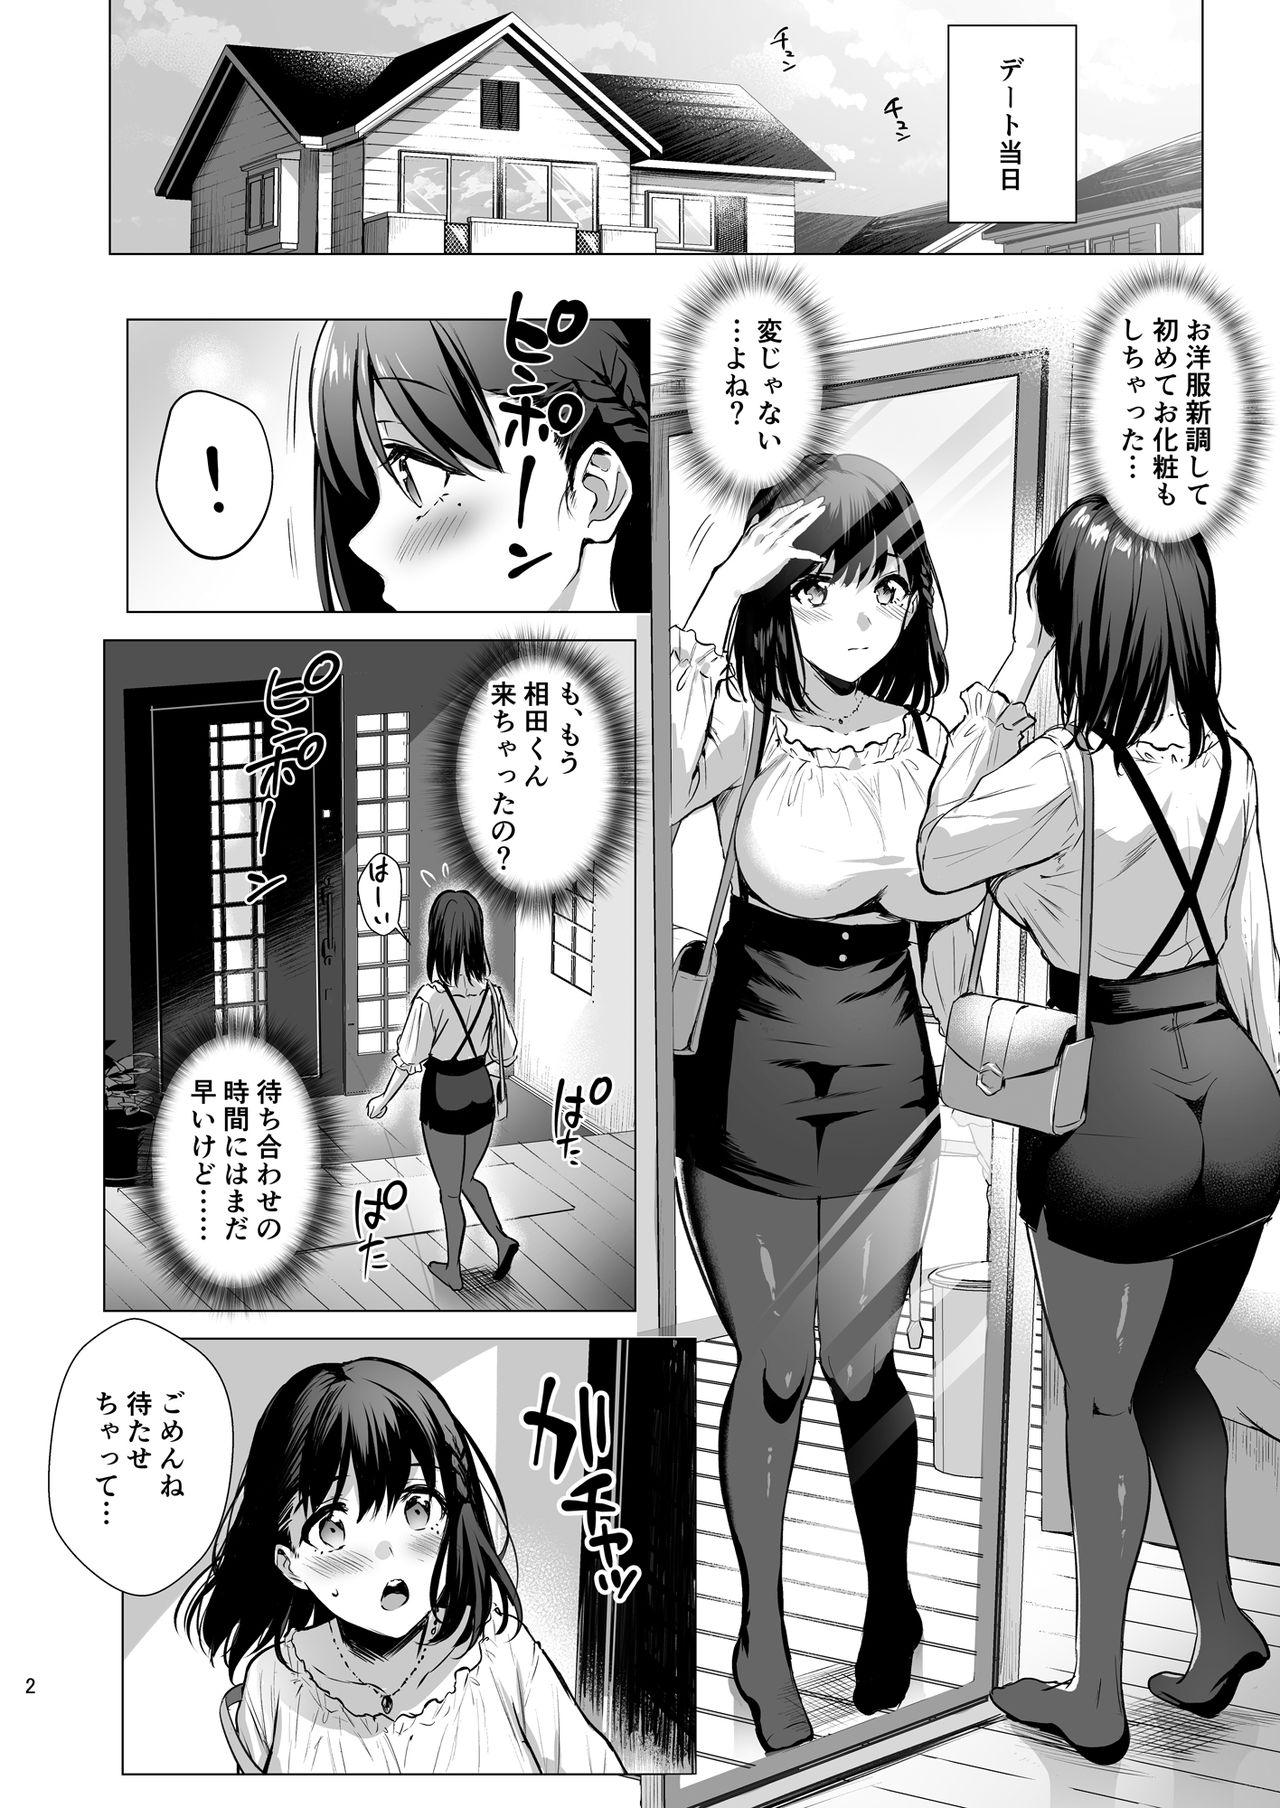 Innocent Toshoshitsu no Kanojo 3 - Original Gostoso - Page 3